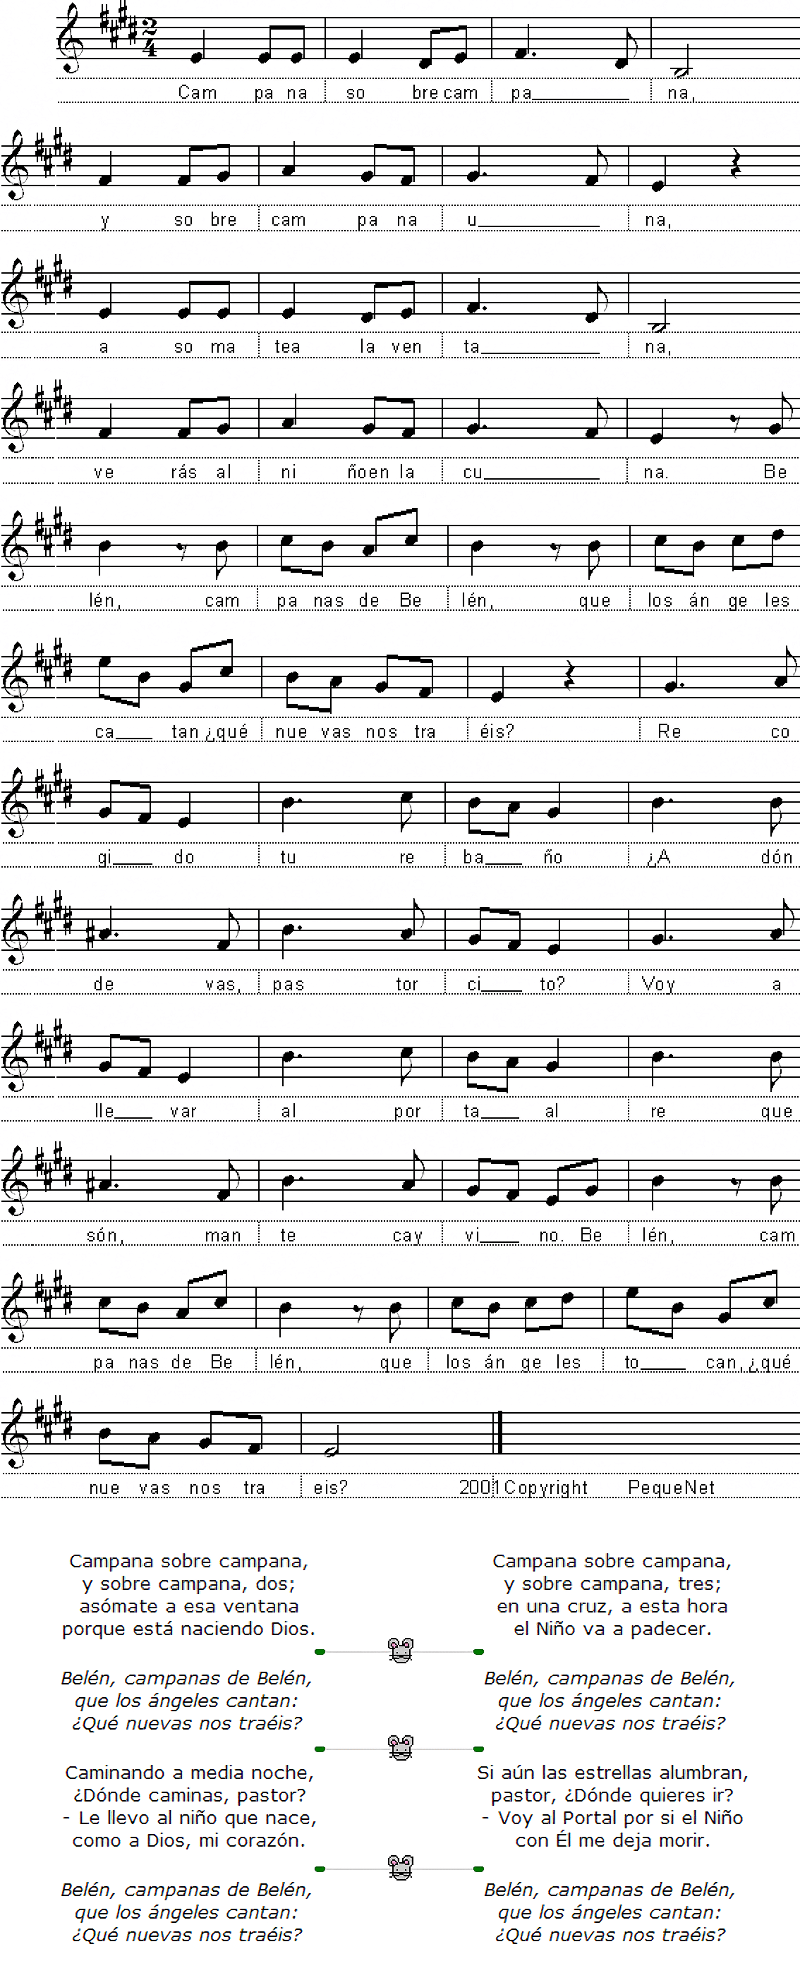 Partitura fácil para piano  de la canción Campana sobre campana